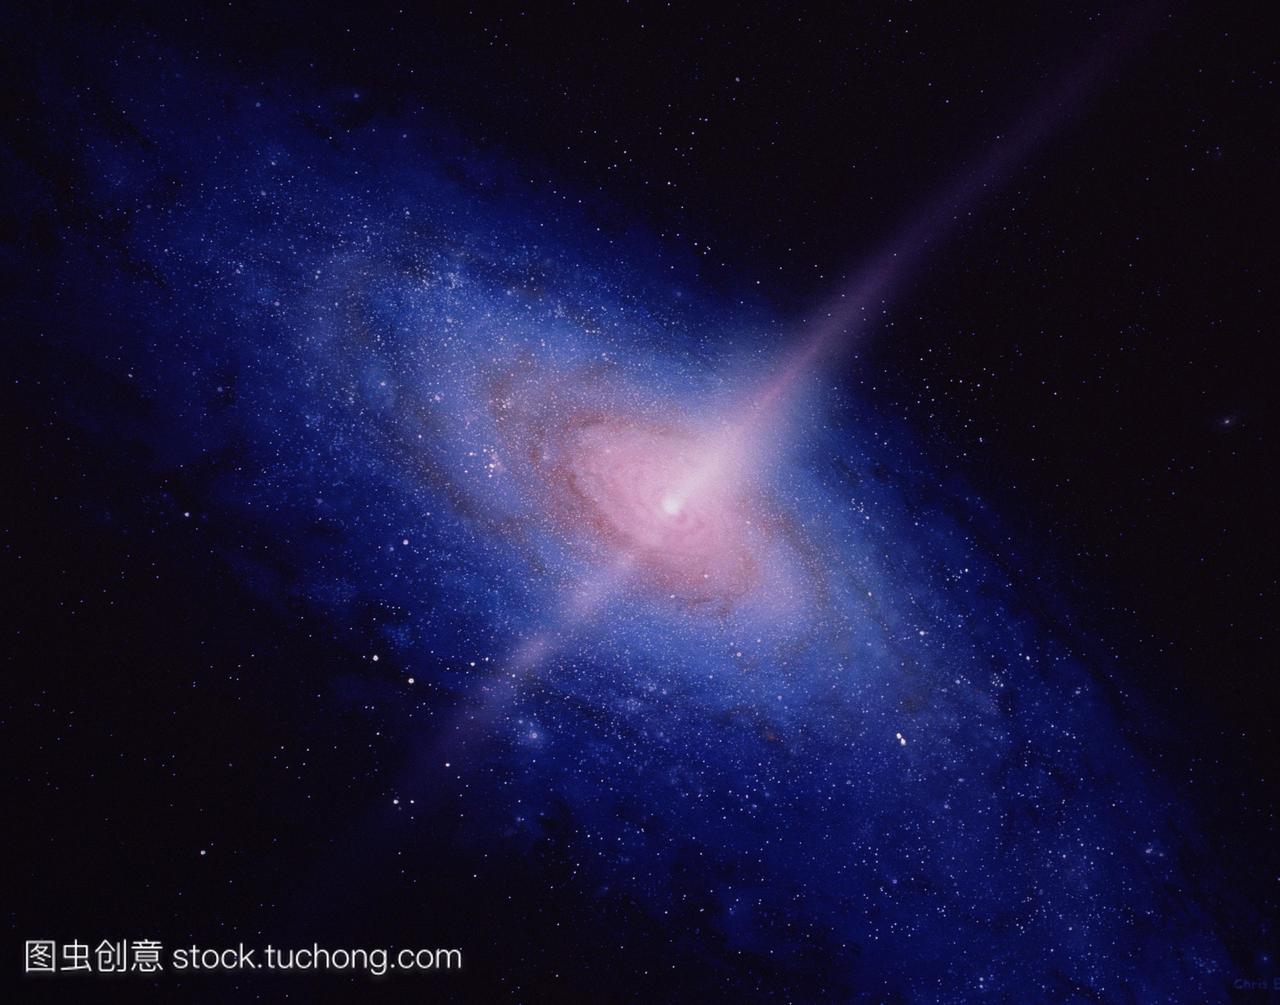 说明一个活跃的螺旋星系的相对飞机拍摄的发光